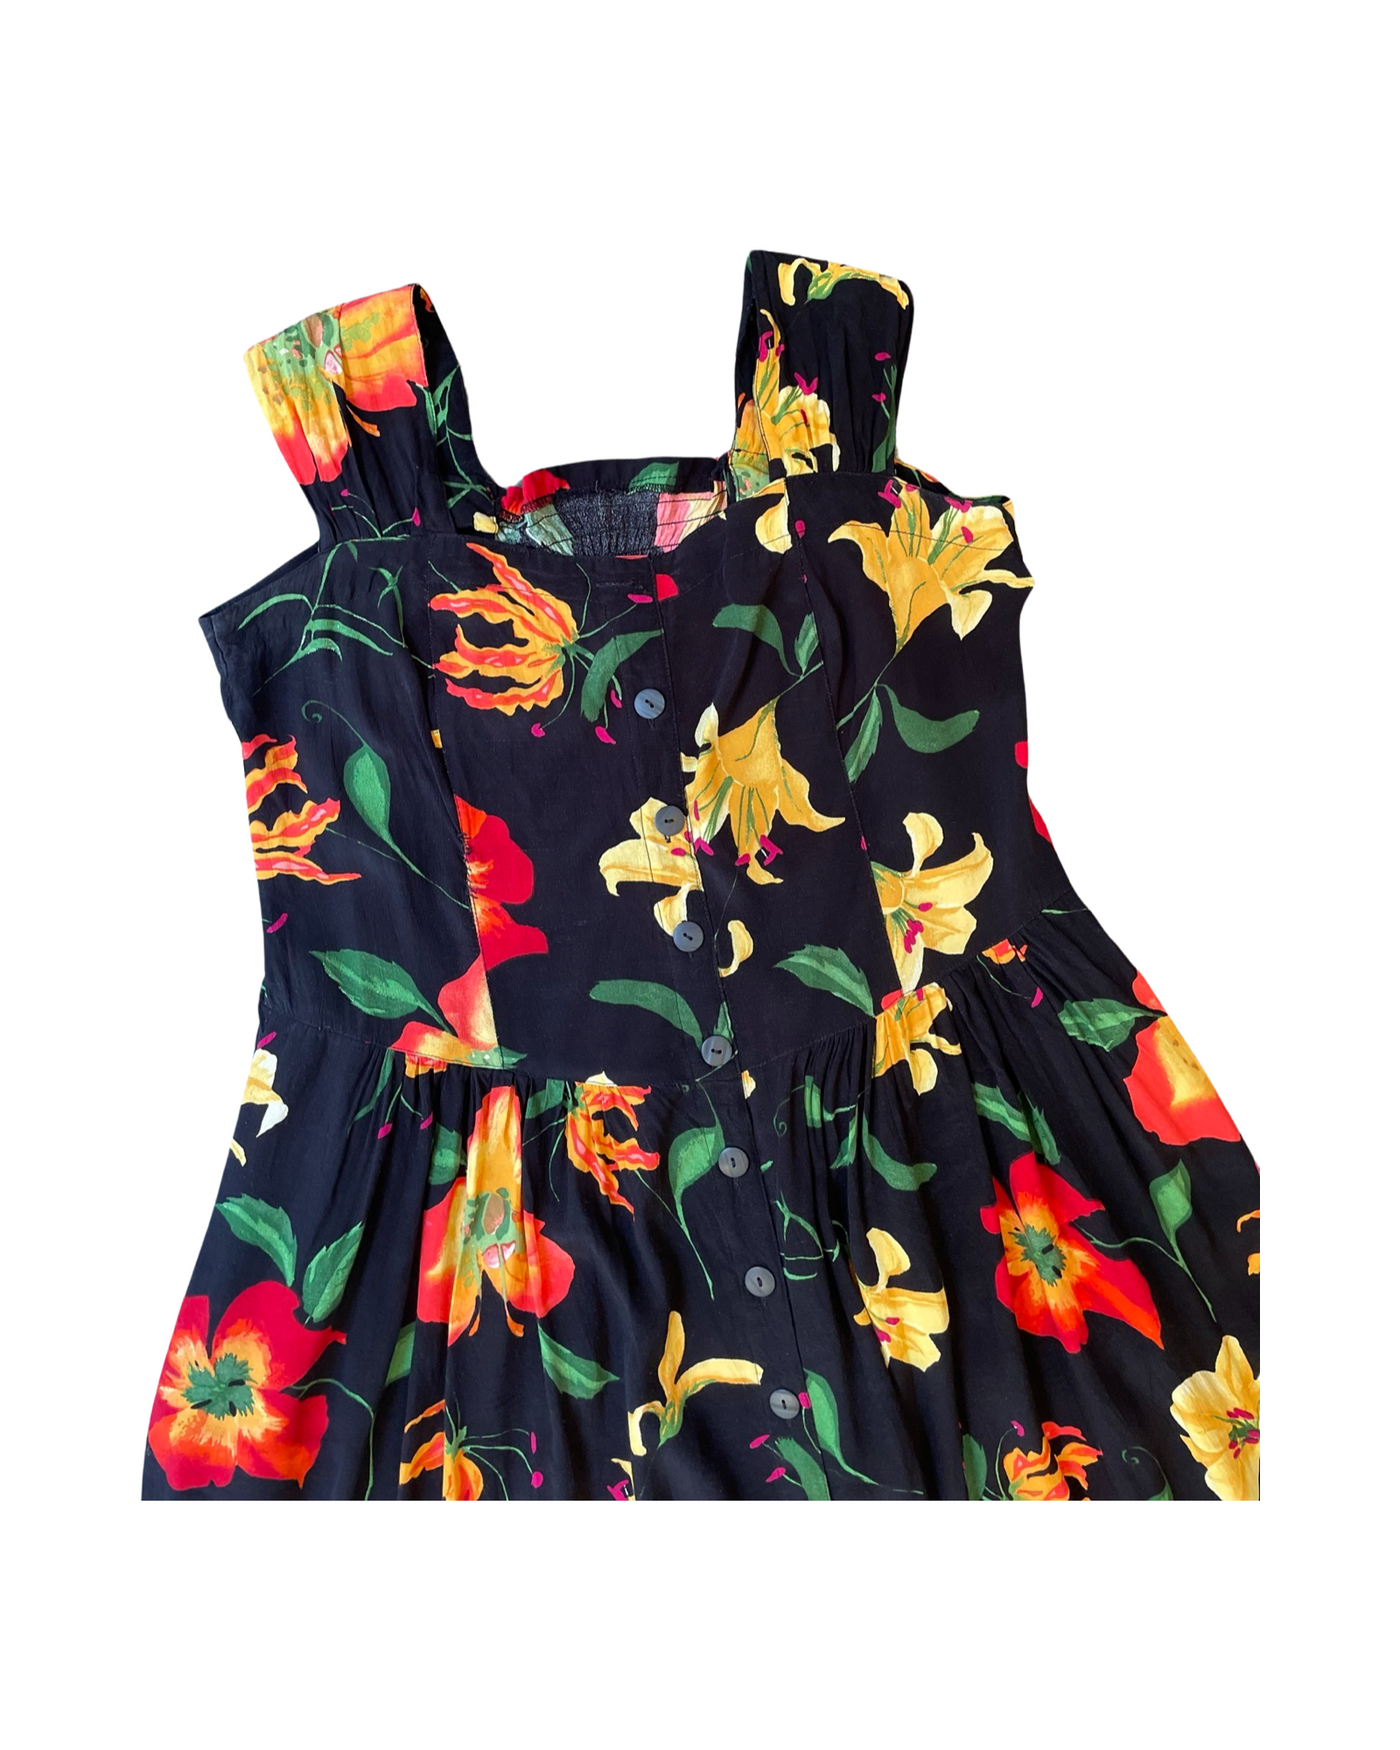 Vintage 90’s Flower Dress Size 14